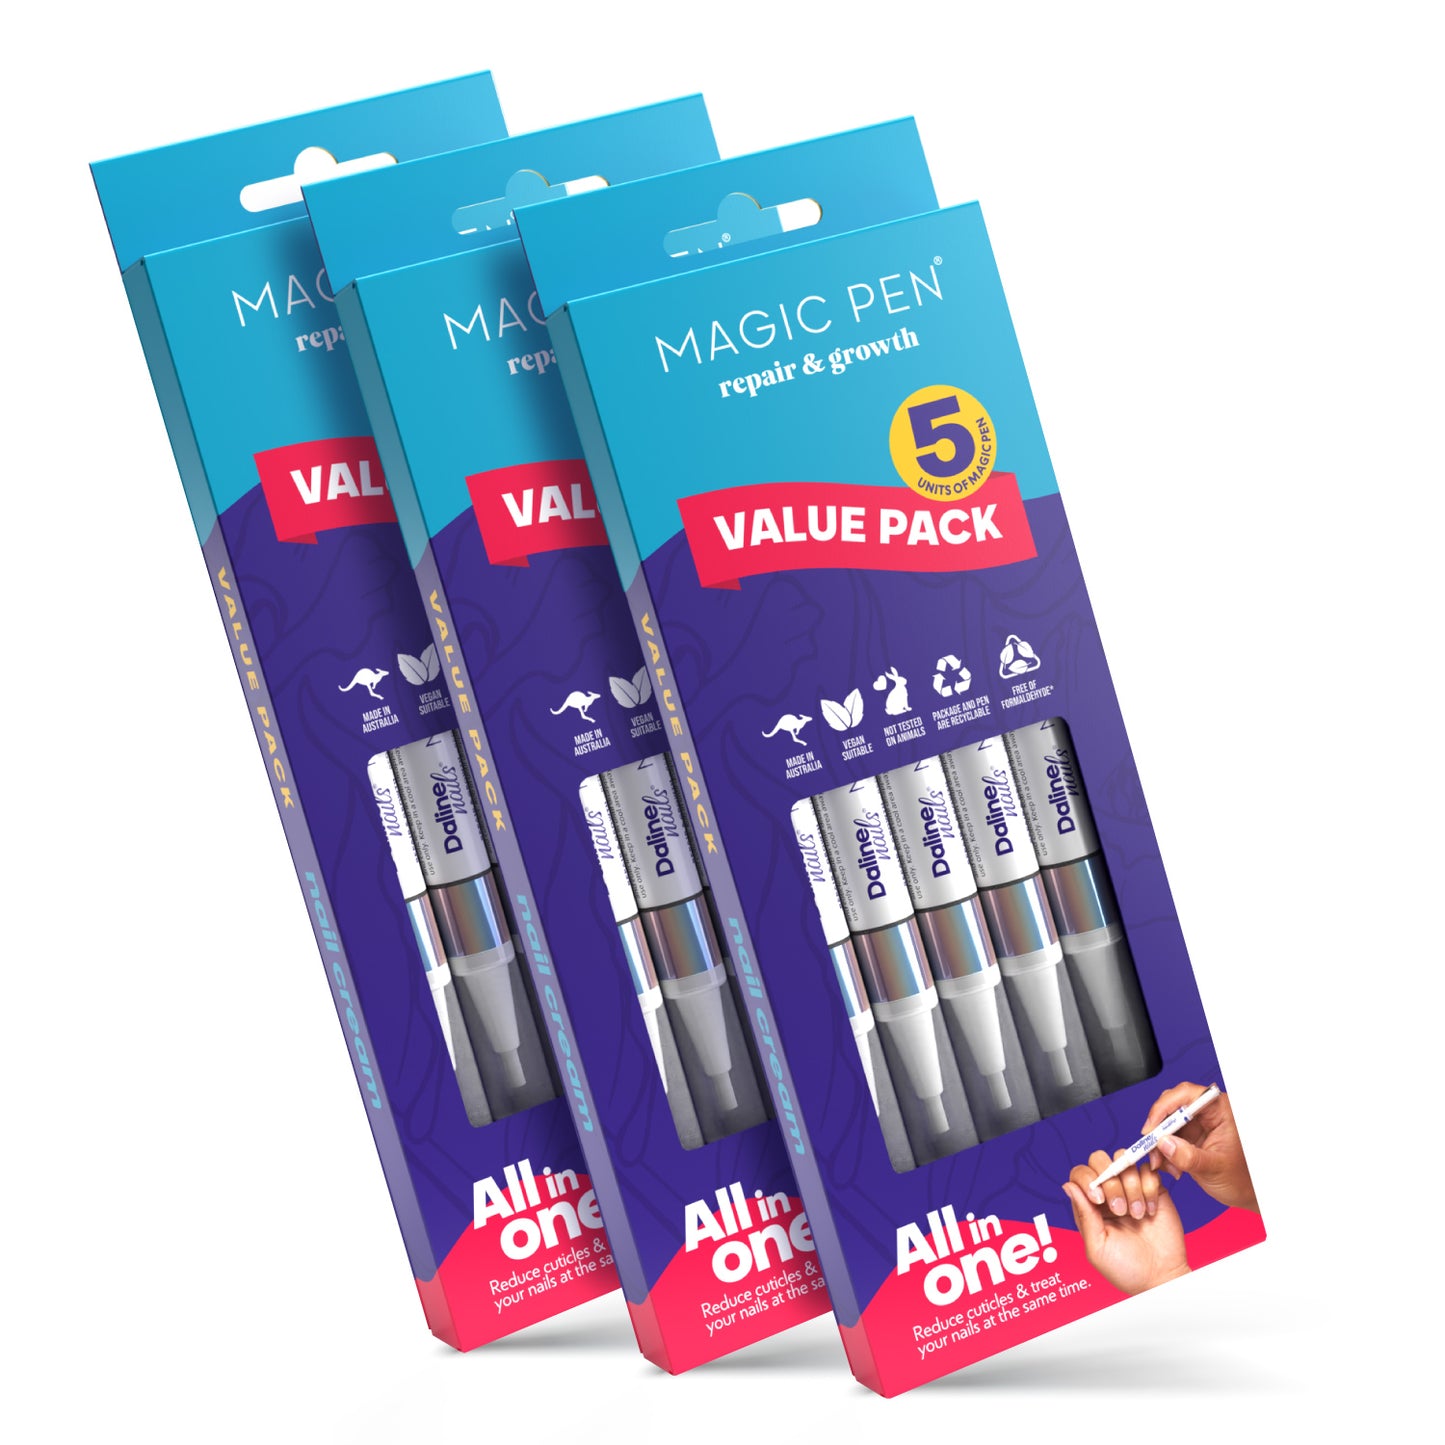 Mega Value Pack - 15 pens